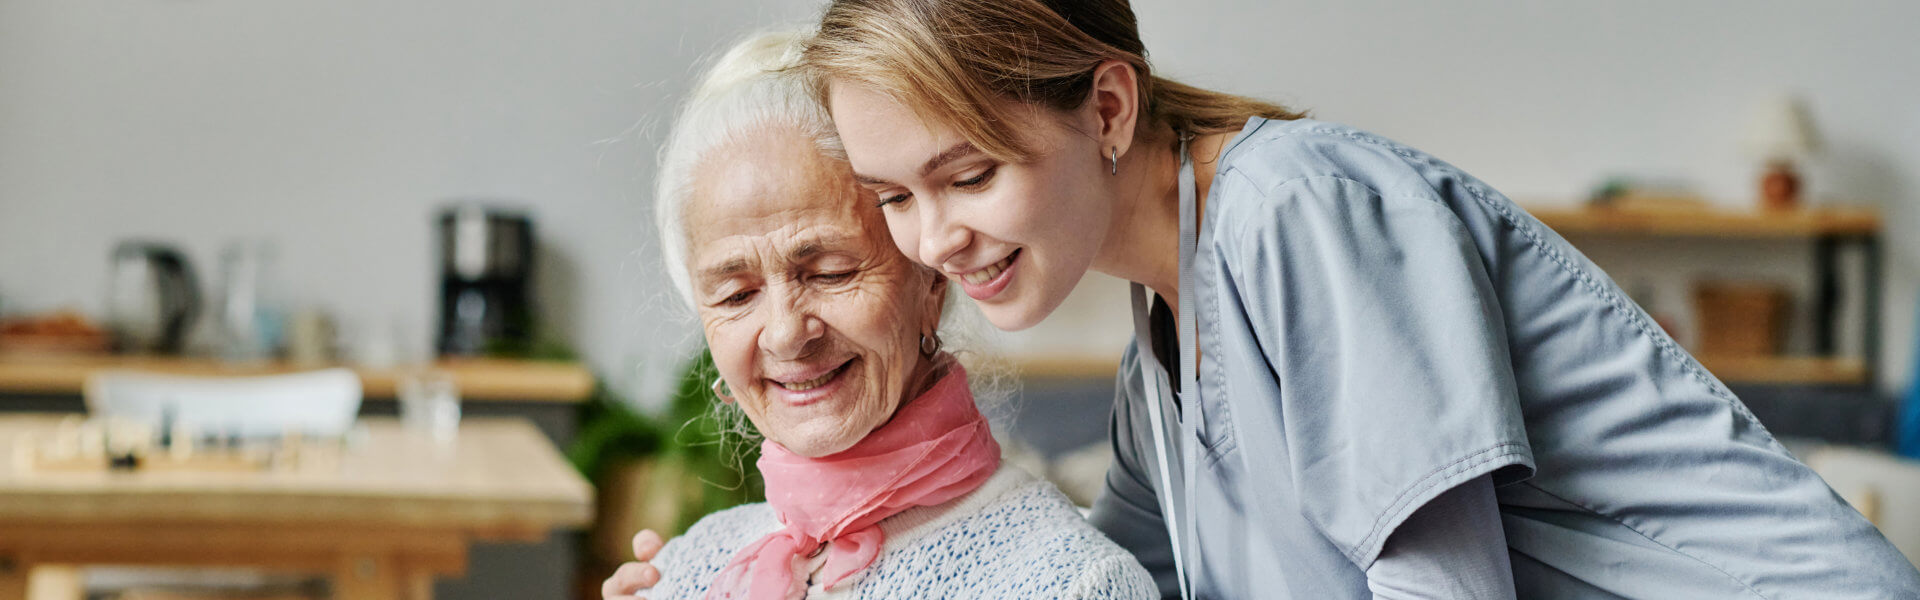 elderly with her caregiver hugging